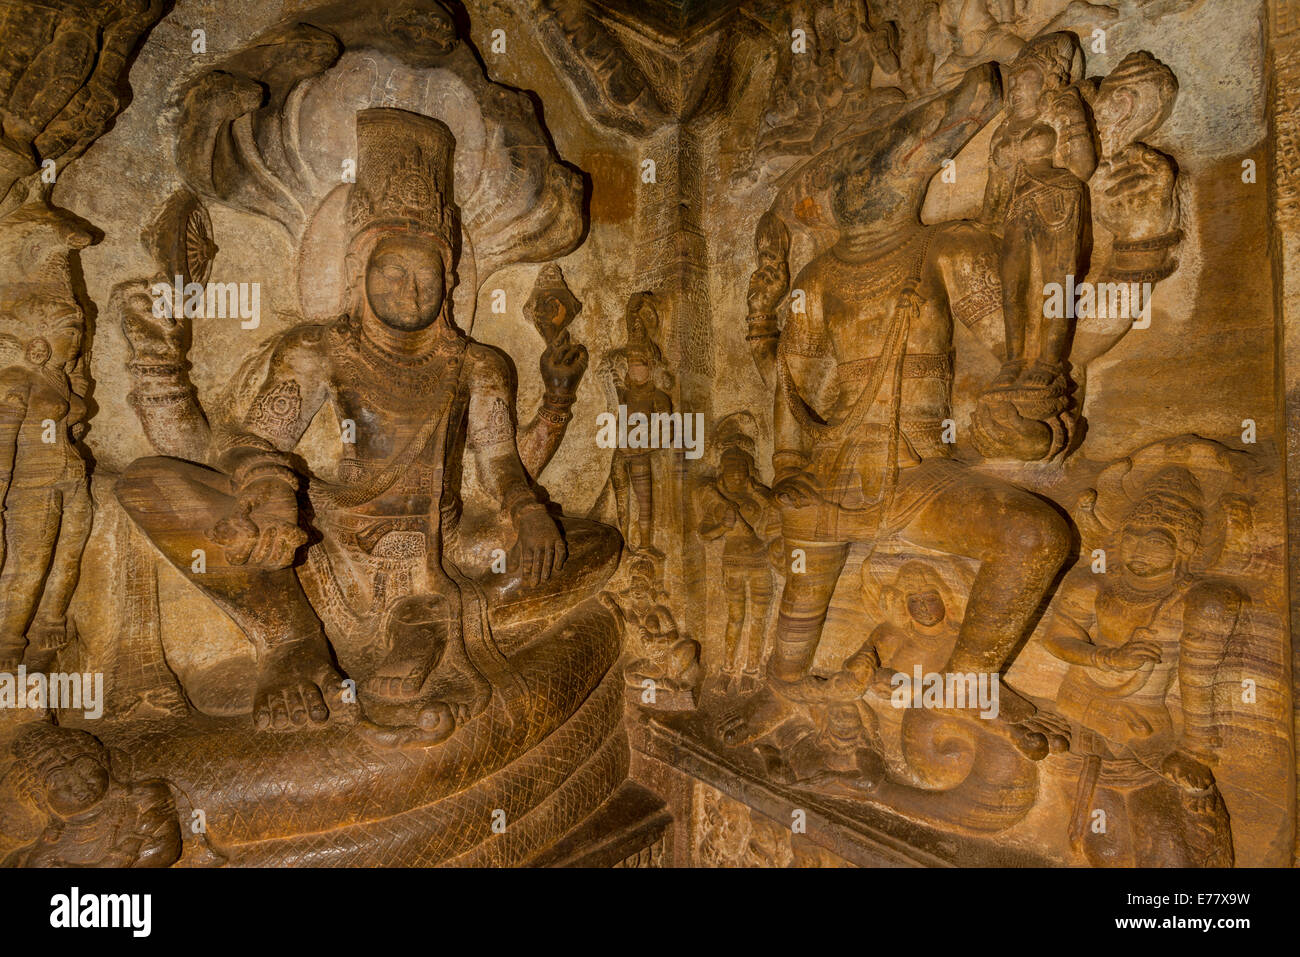 Soulagement en pierre, Badami grottes taillées dans la roche solide lors de la 6e à la 7e siècle, sculptés dans la roche solide, Badami, Karnataka, Inde Banque D'Images